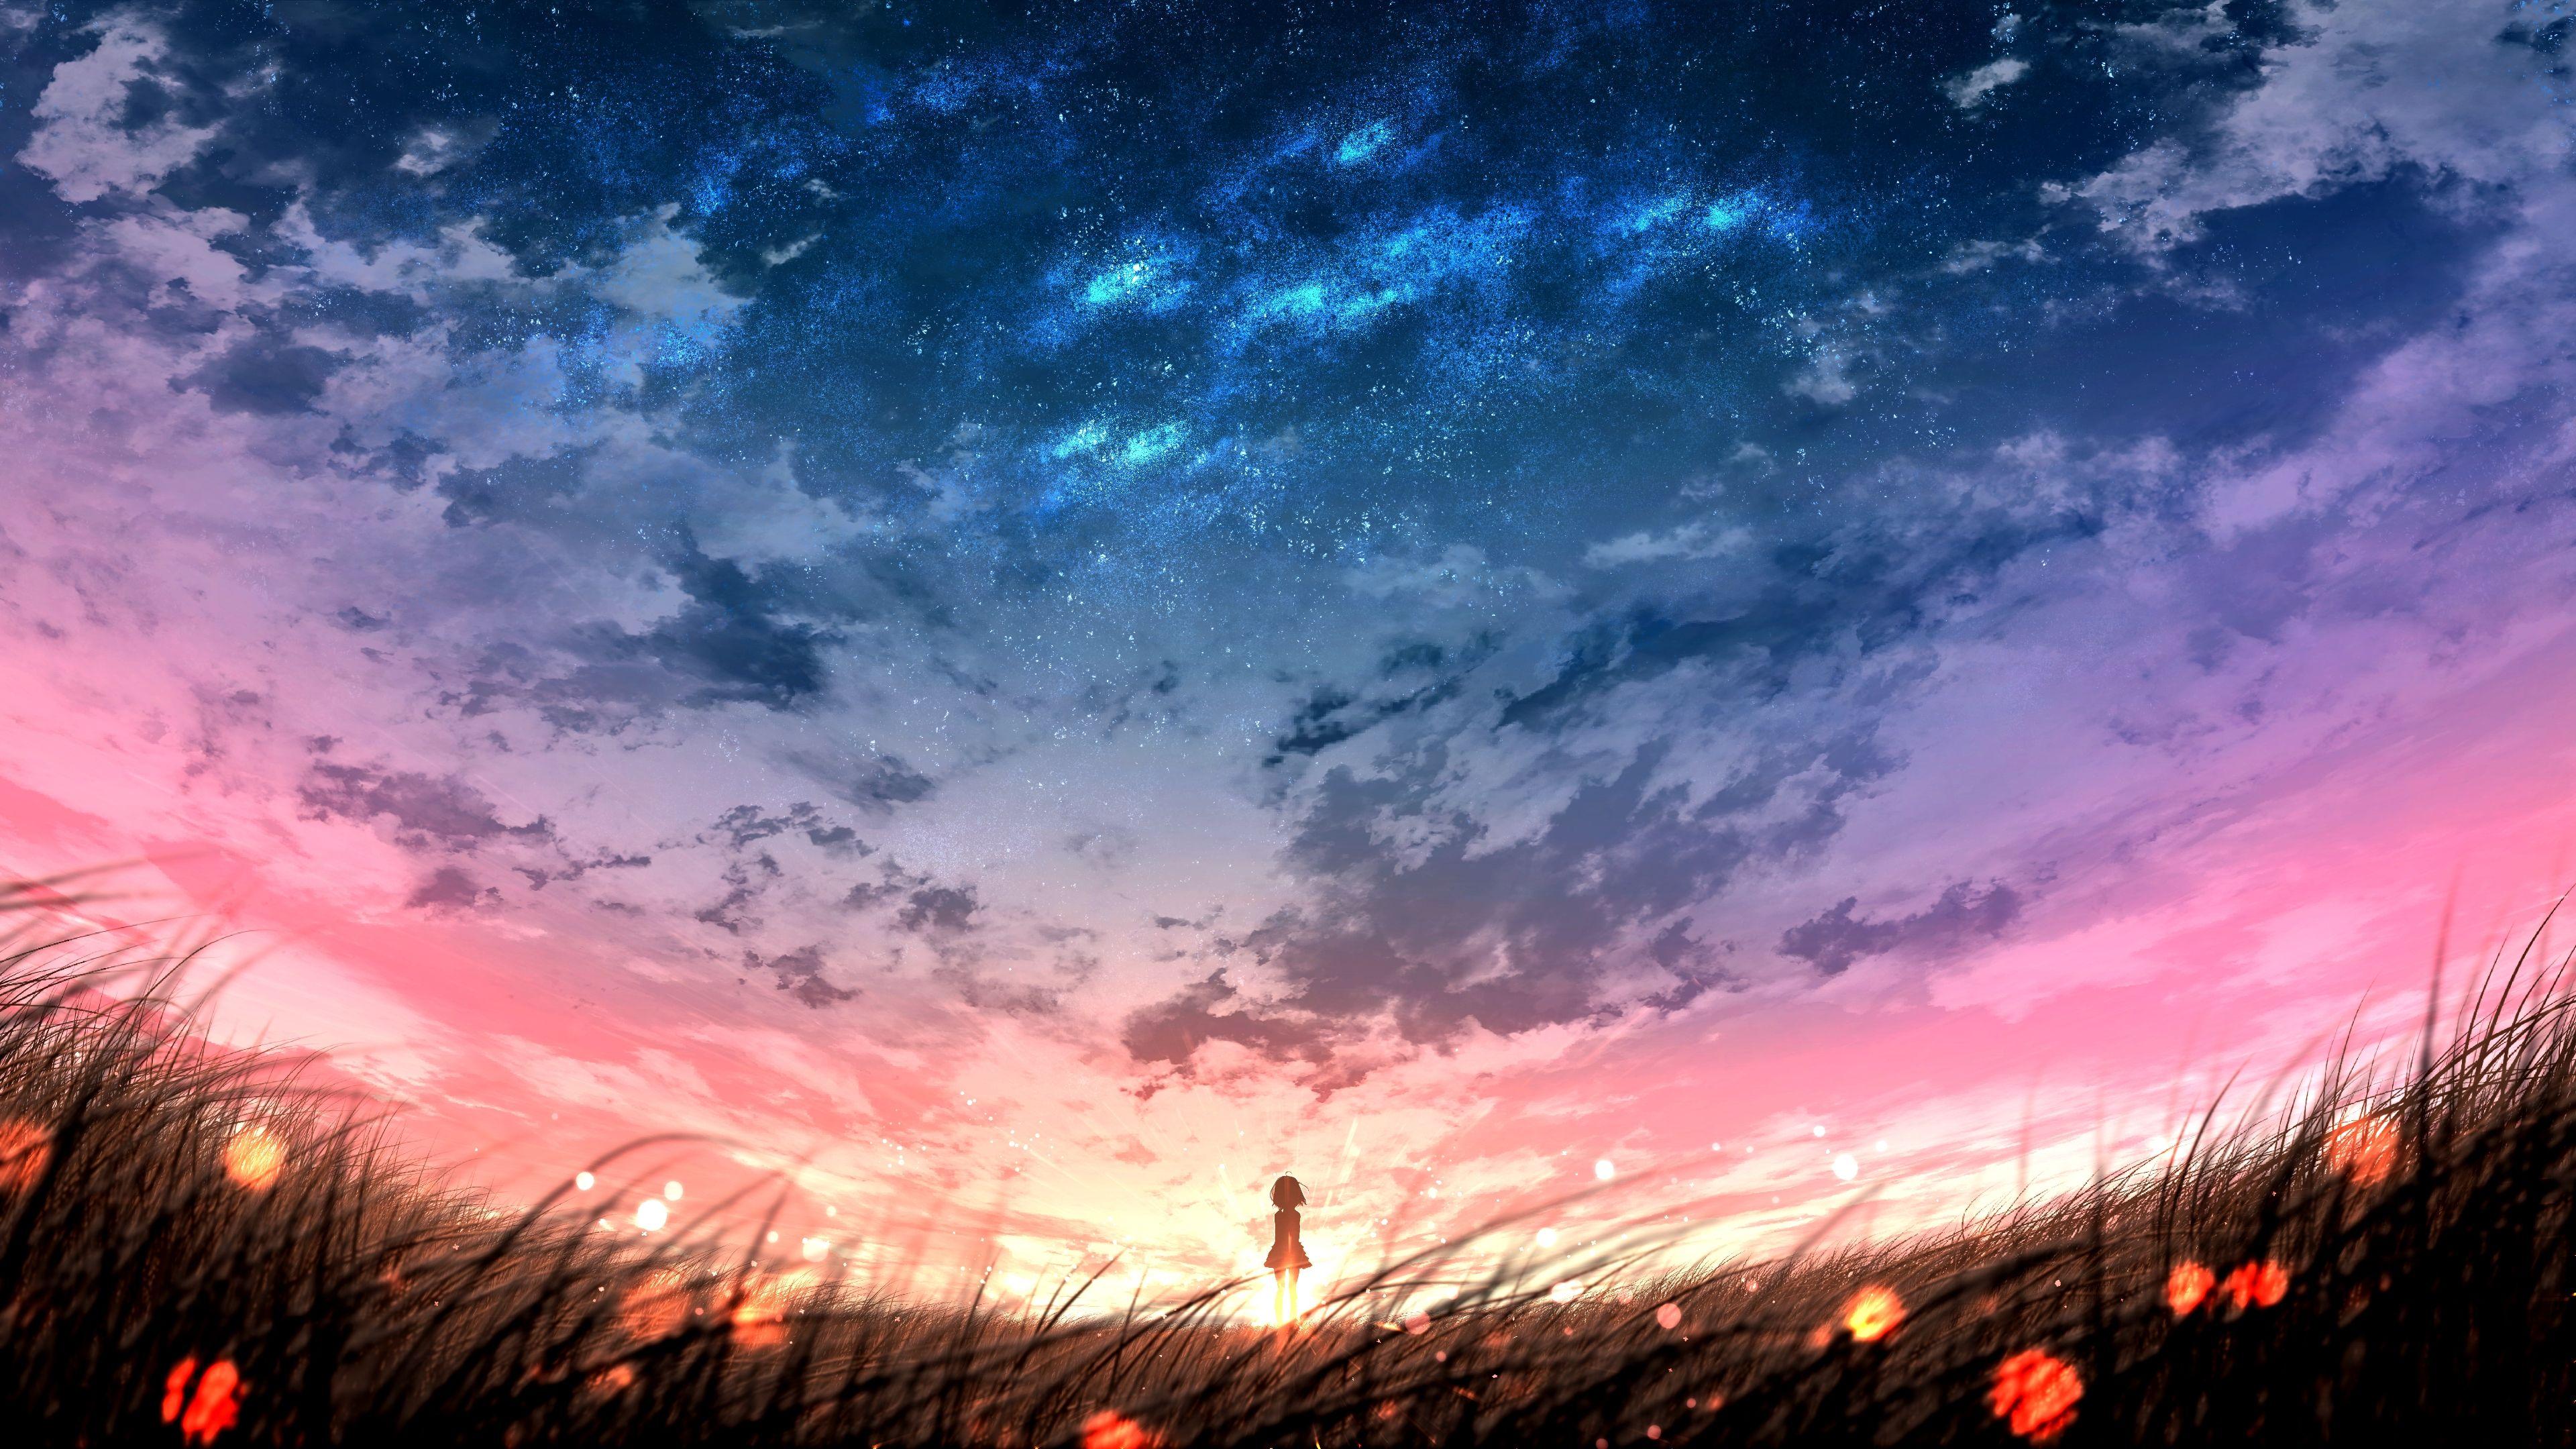 Aesthetic Anime Sunset Background Artwork 3 Poster for Sale by Umairuem   Redbubble